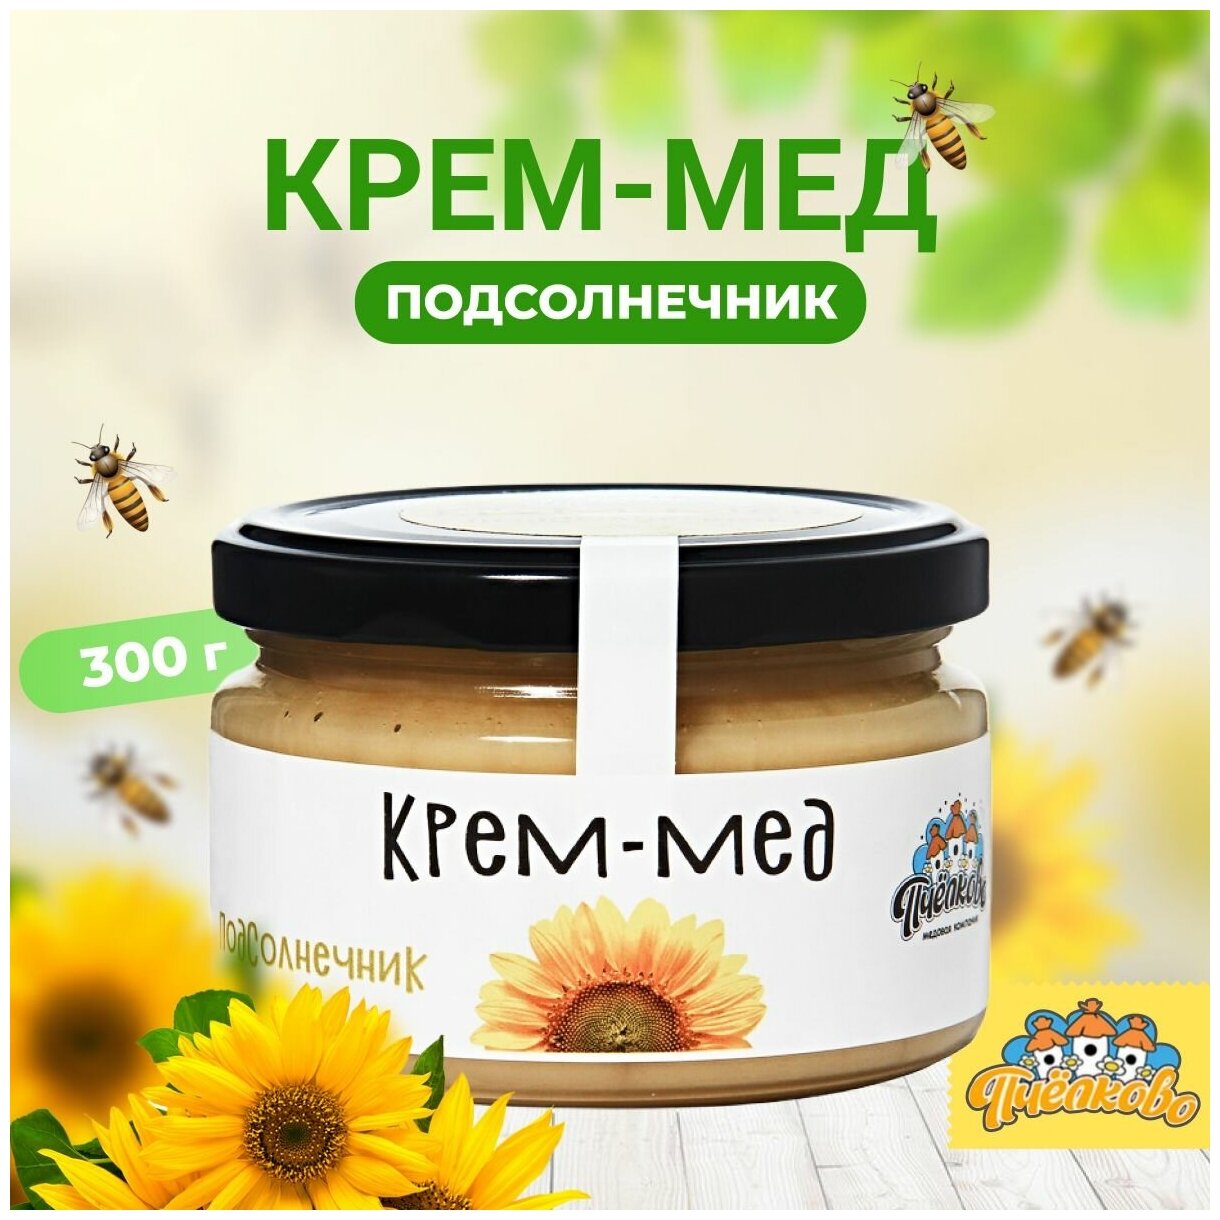 Натуральный мед подсолнечник "Пчёлково" 300г